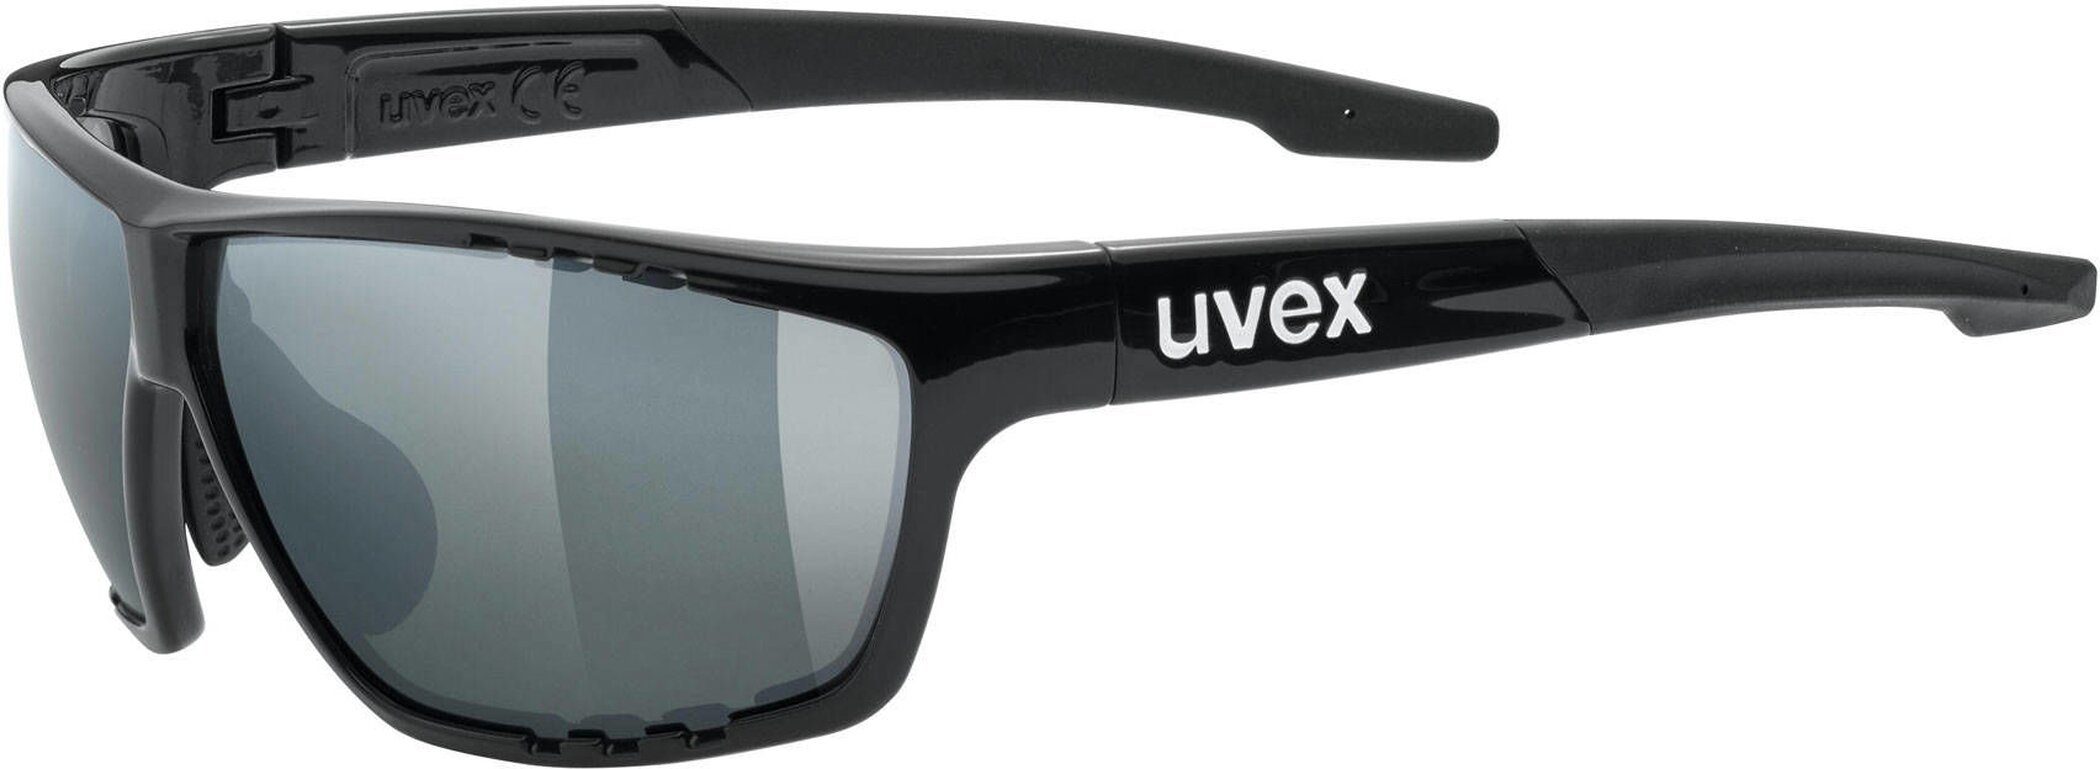 Sonnenbrille sportstyle 706 Uvex uvex BLACK